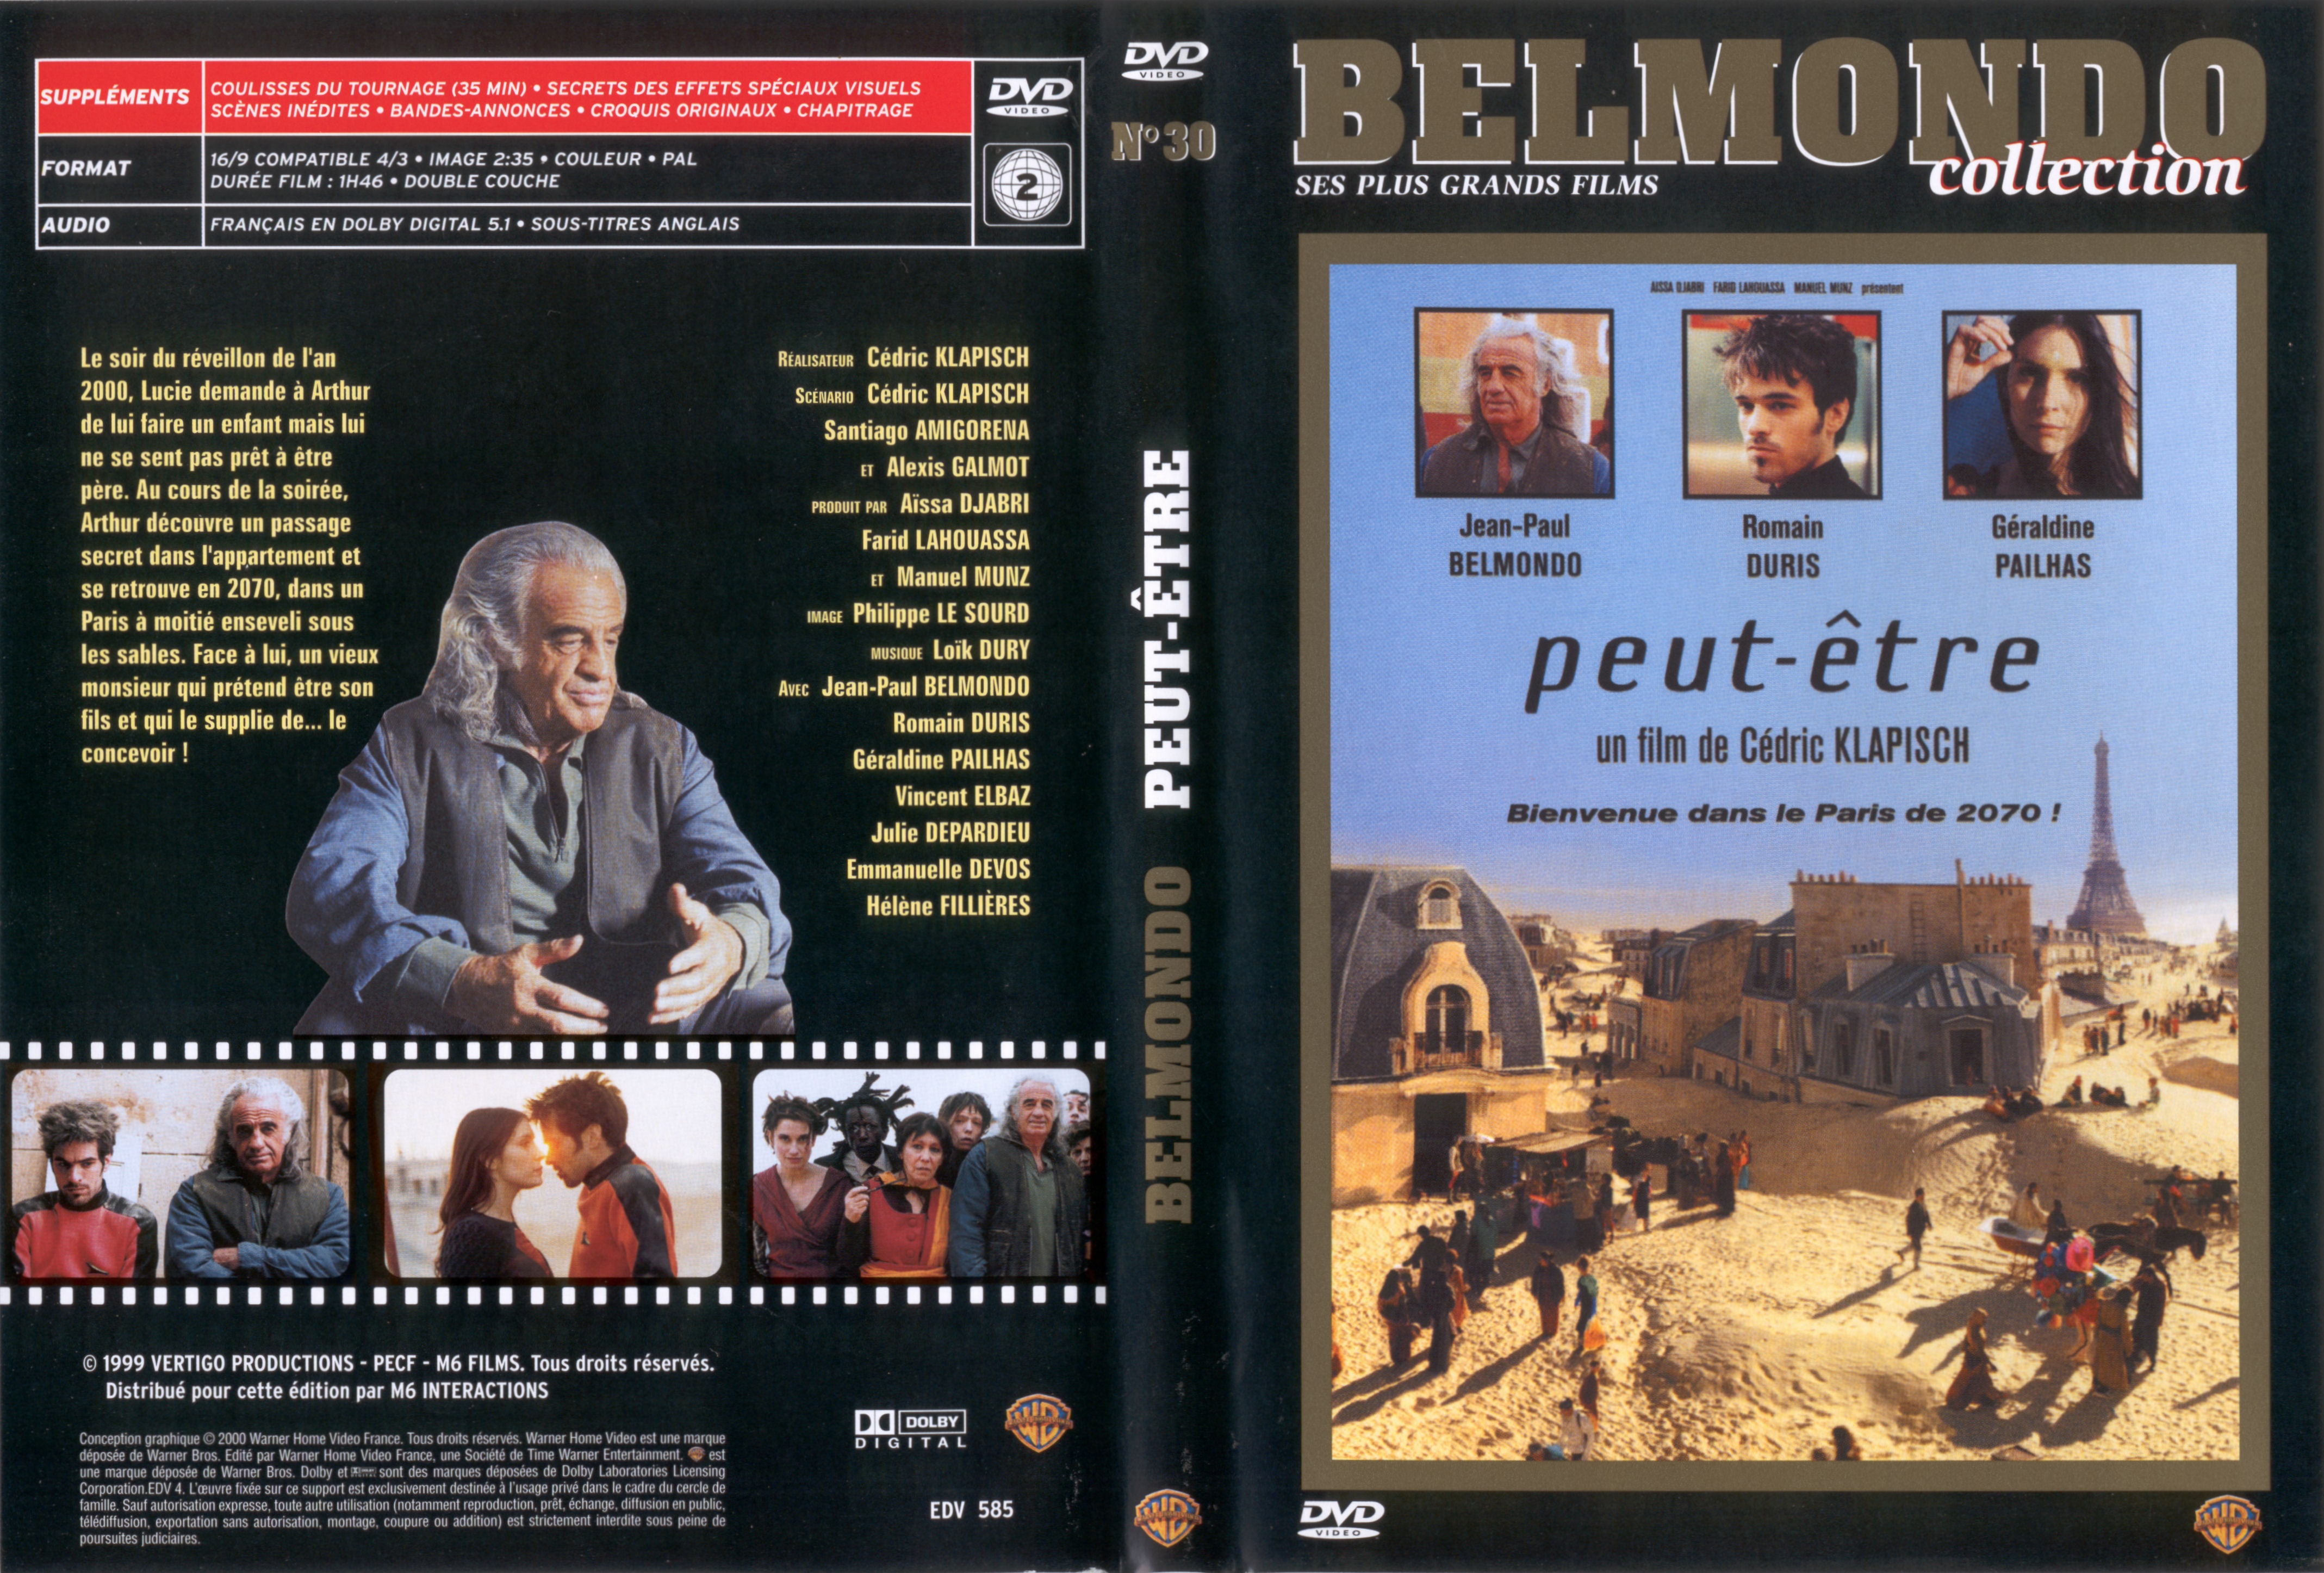 Jaquette DVD Peut-etre